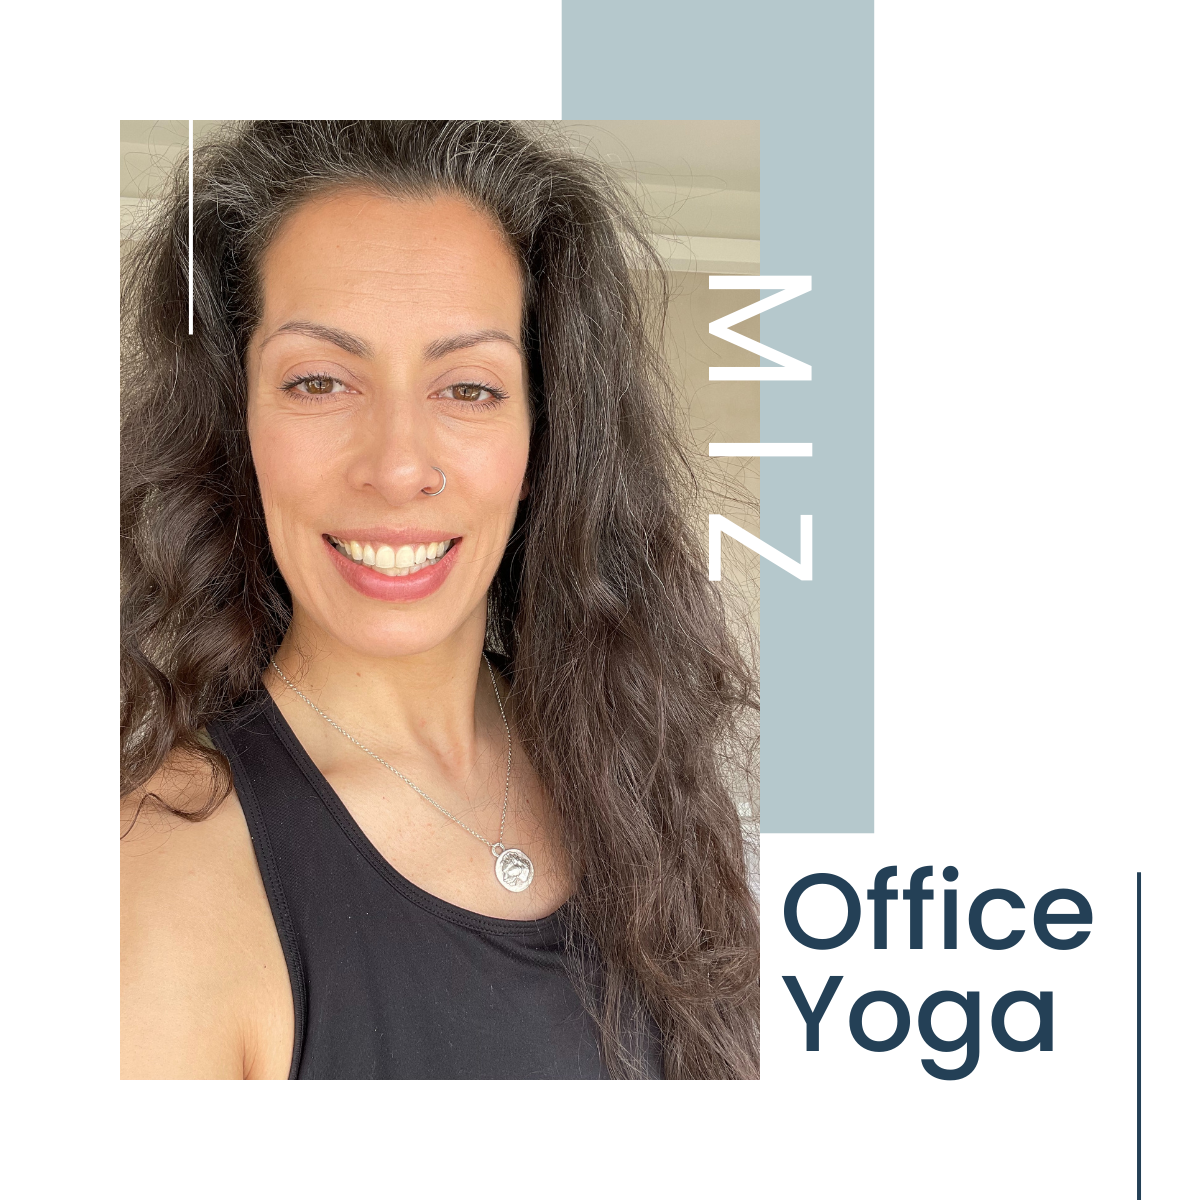 Office Yoga Team Miz